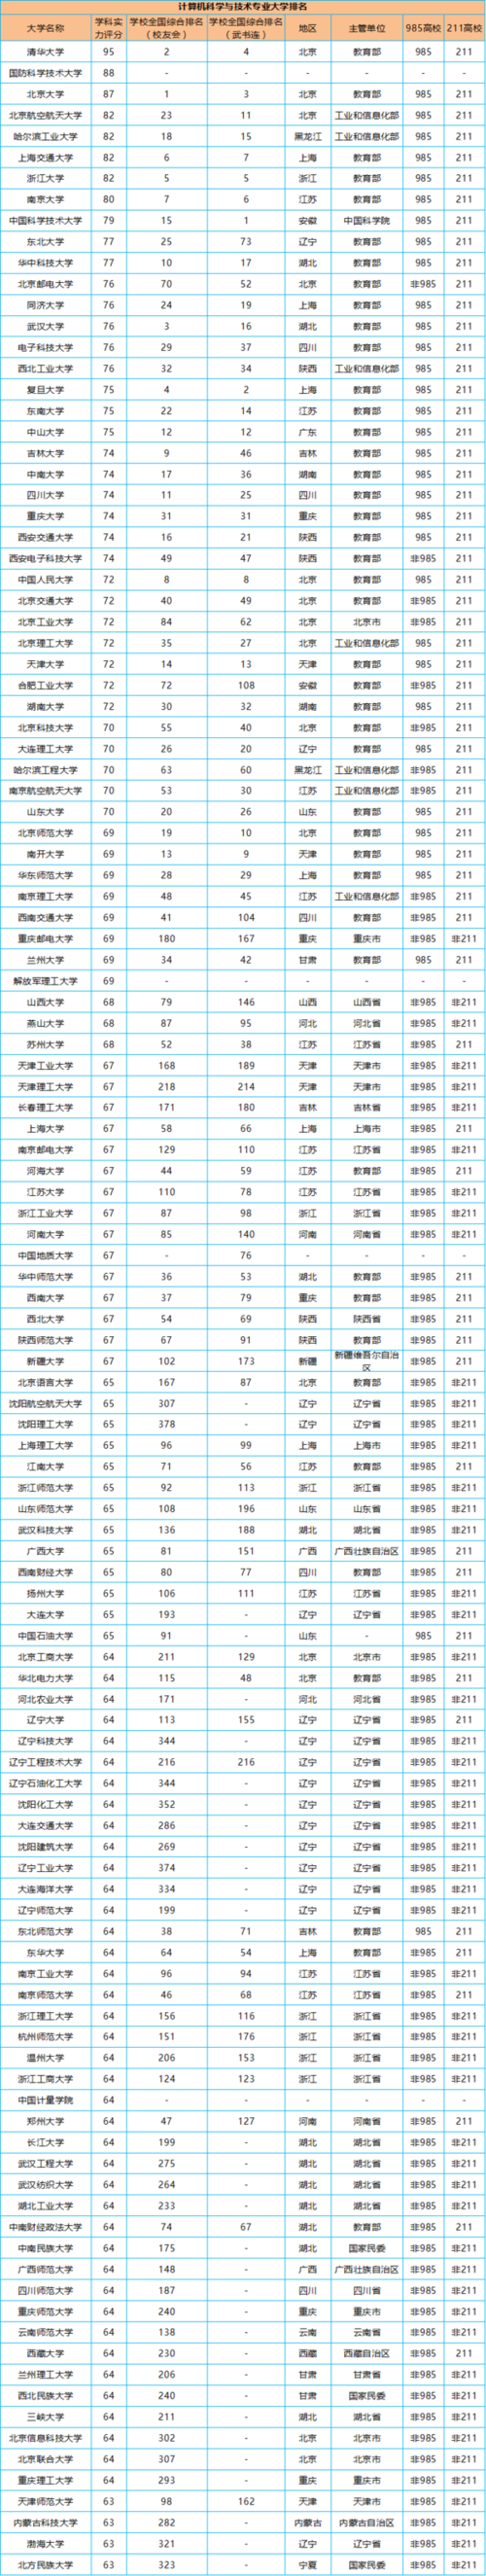 中国大学计算机专业排名2022最新排名 第五轮学科评估华中科技大学